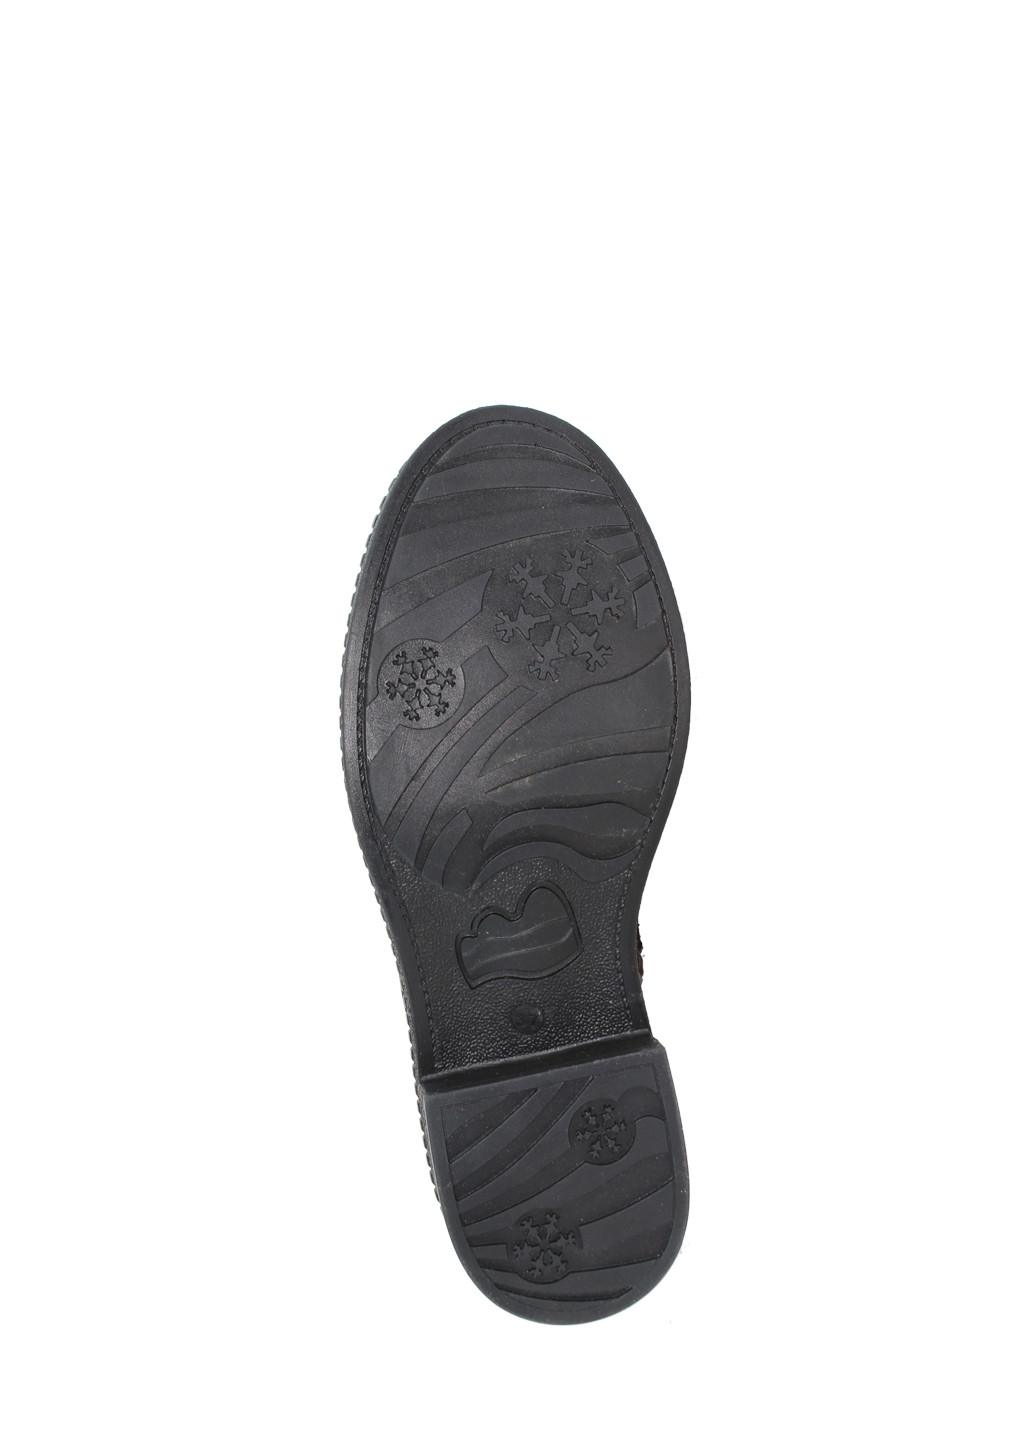 Осенние ботинки rsm-1104 черный Sothby's